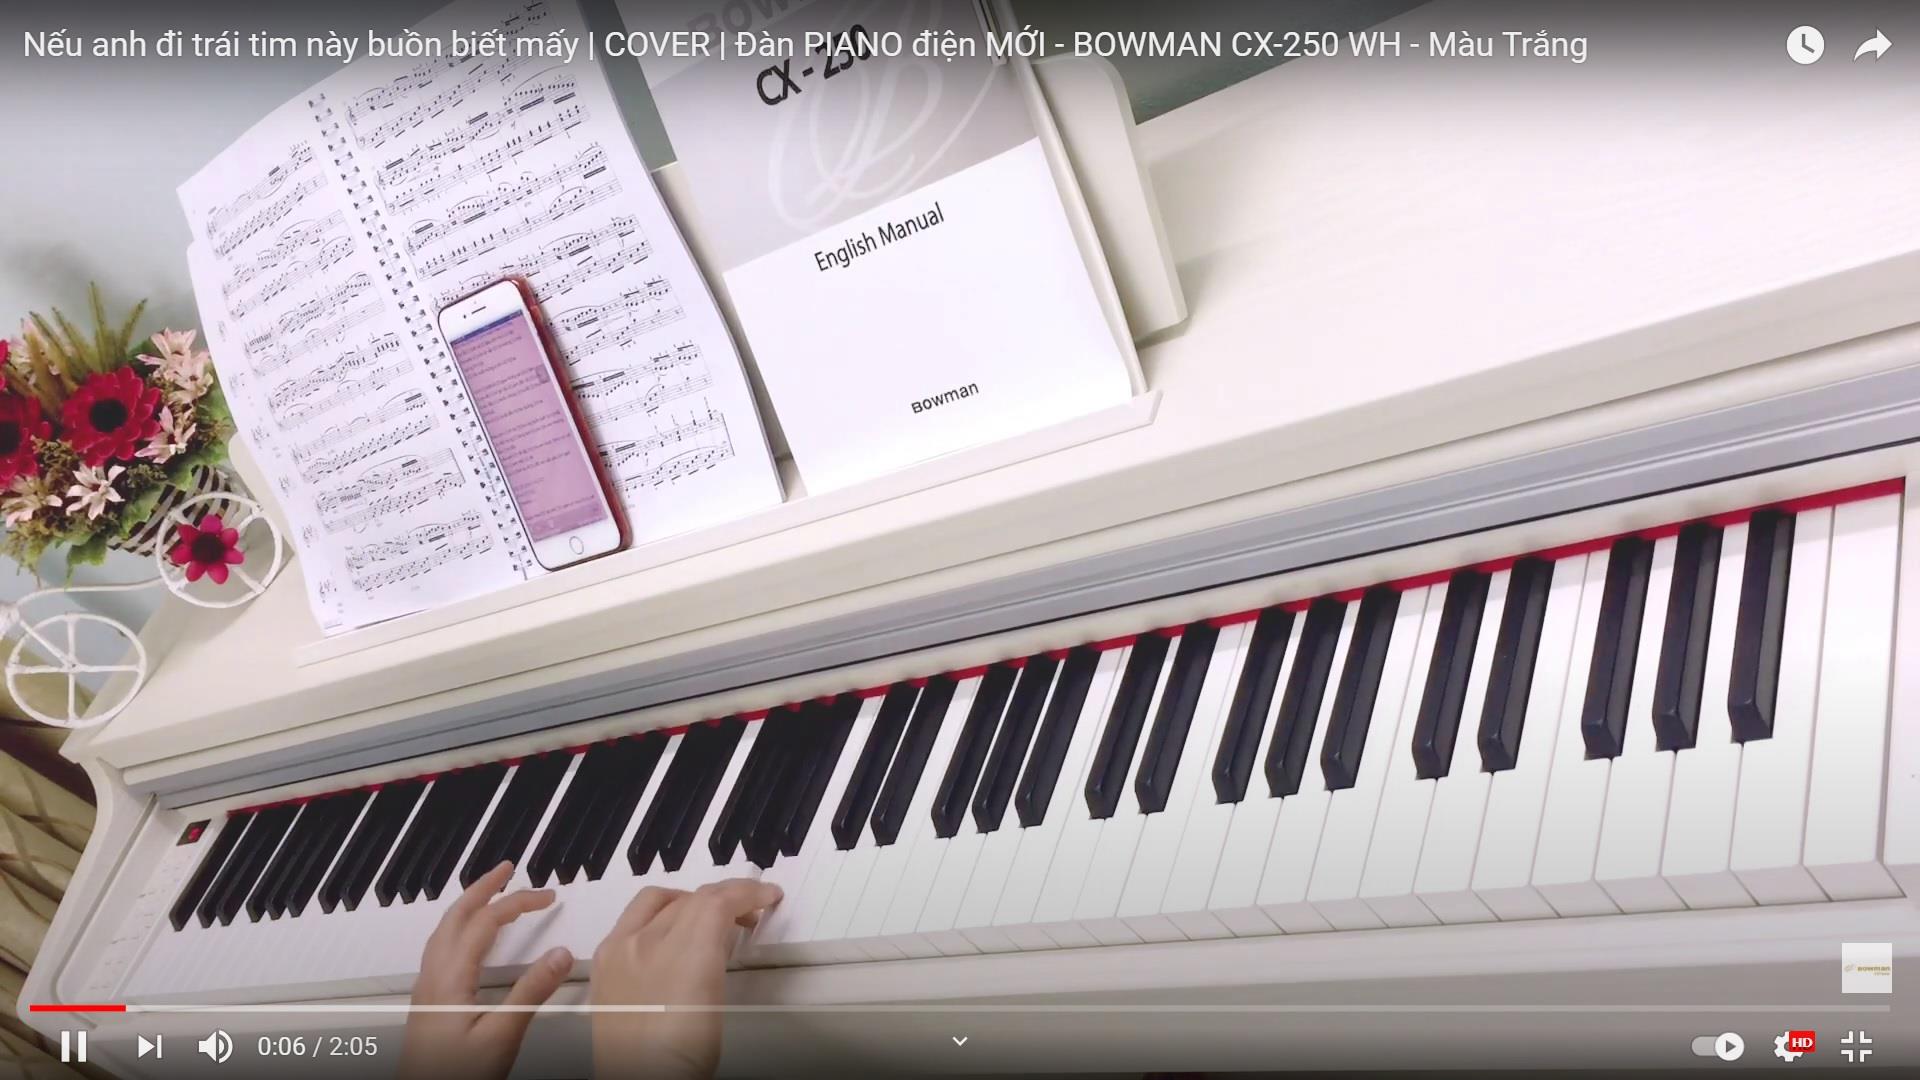 Nếu anh đi trái tim này buồn biết mấy | COVER | Đàn PIANO điện MỚI - BOWMAN CX-250 WH - Màu Trắng